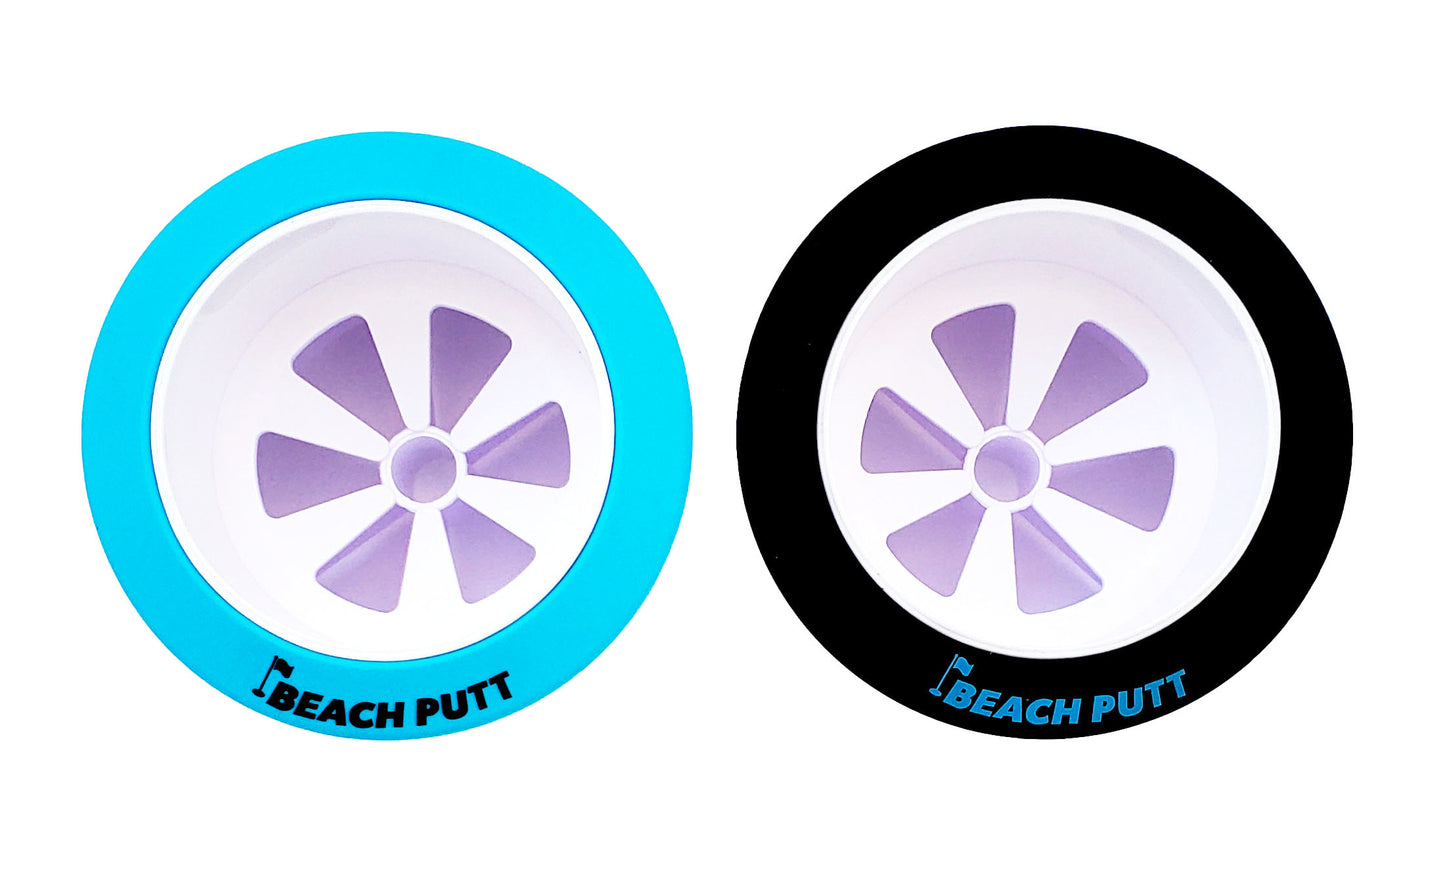 Original Beach Putt - Beach Golf Set - with (2) Adjustable Beach Putt Putters - ORDER TODAY!